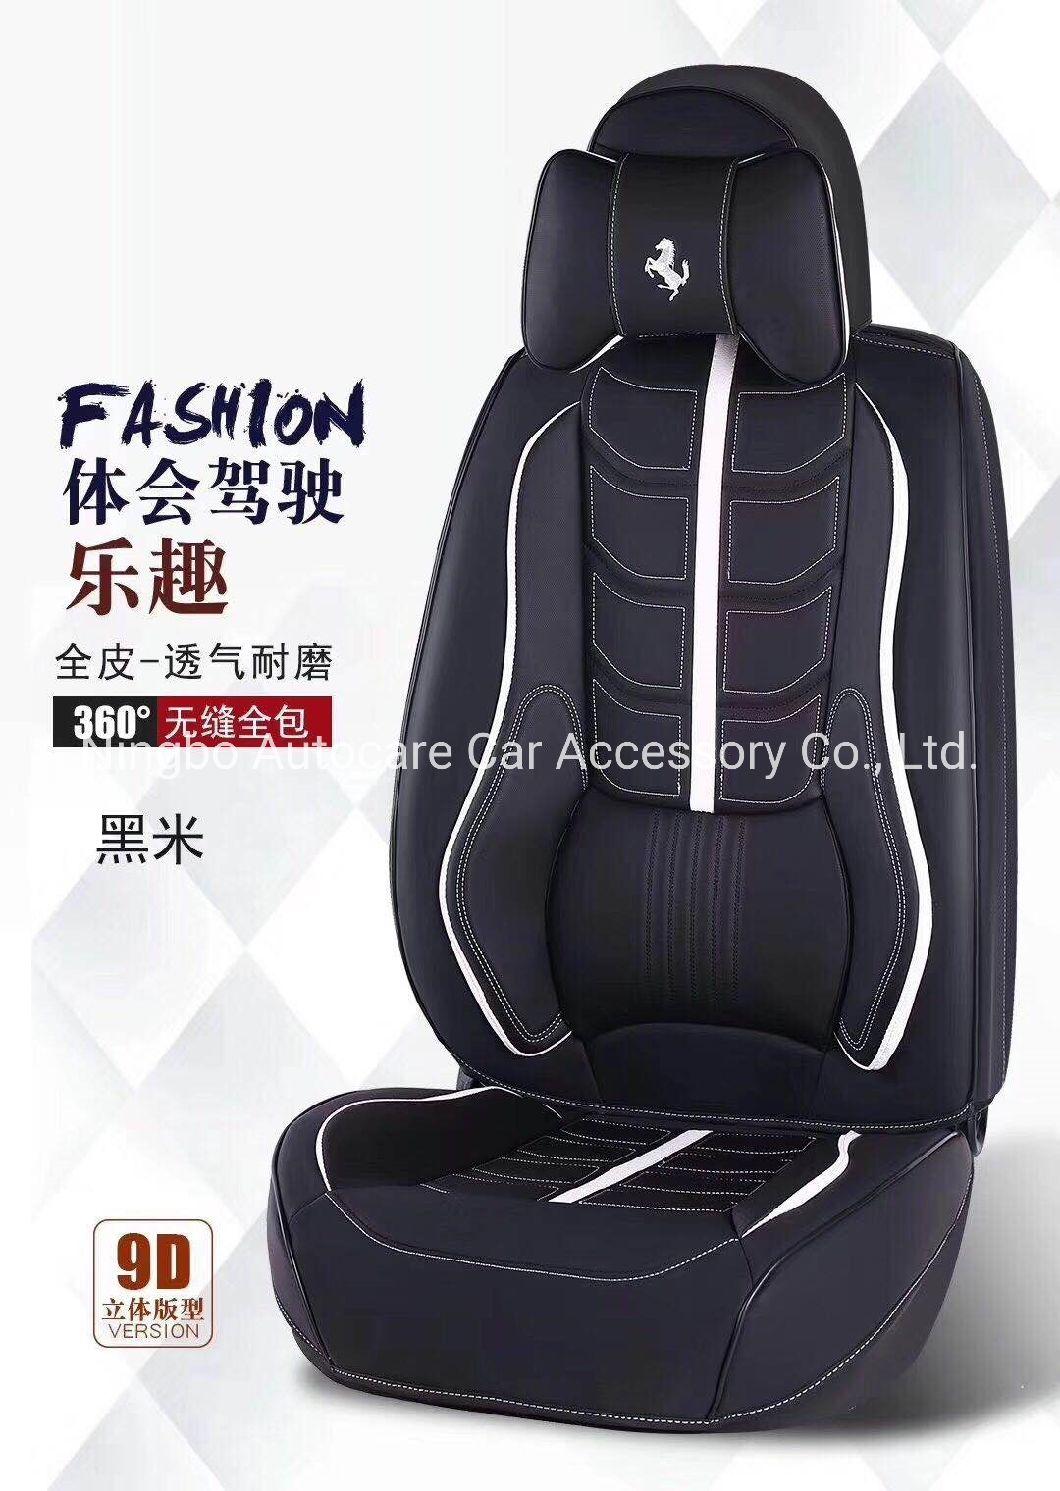 9d Car Seat Cushion